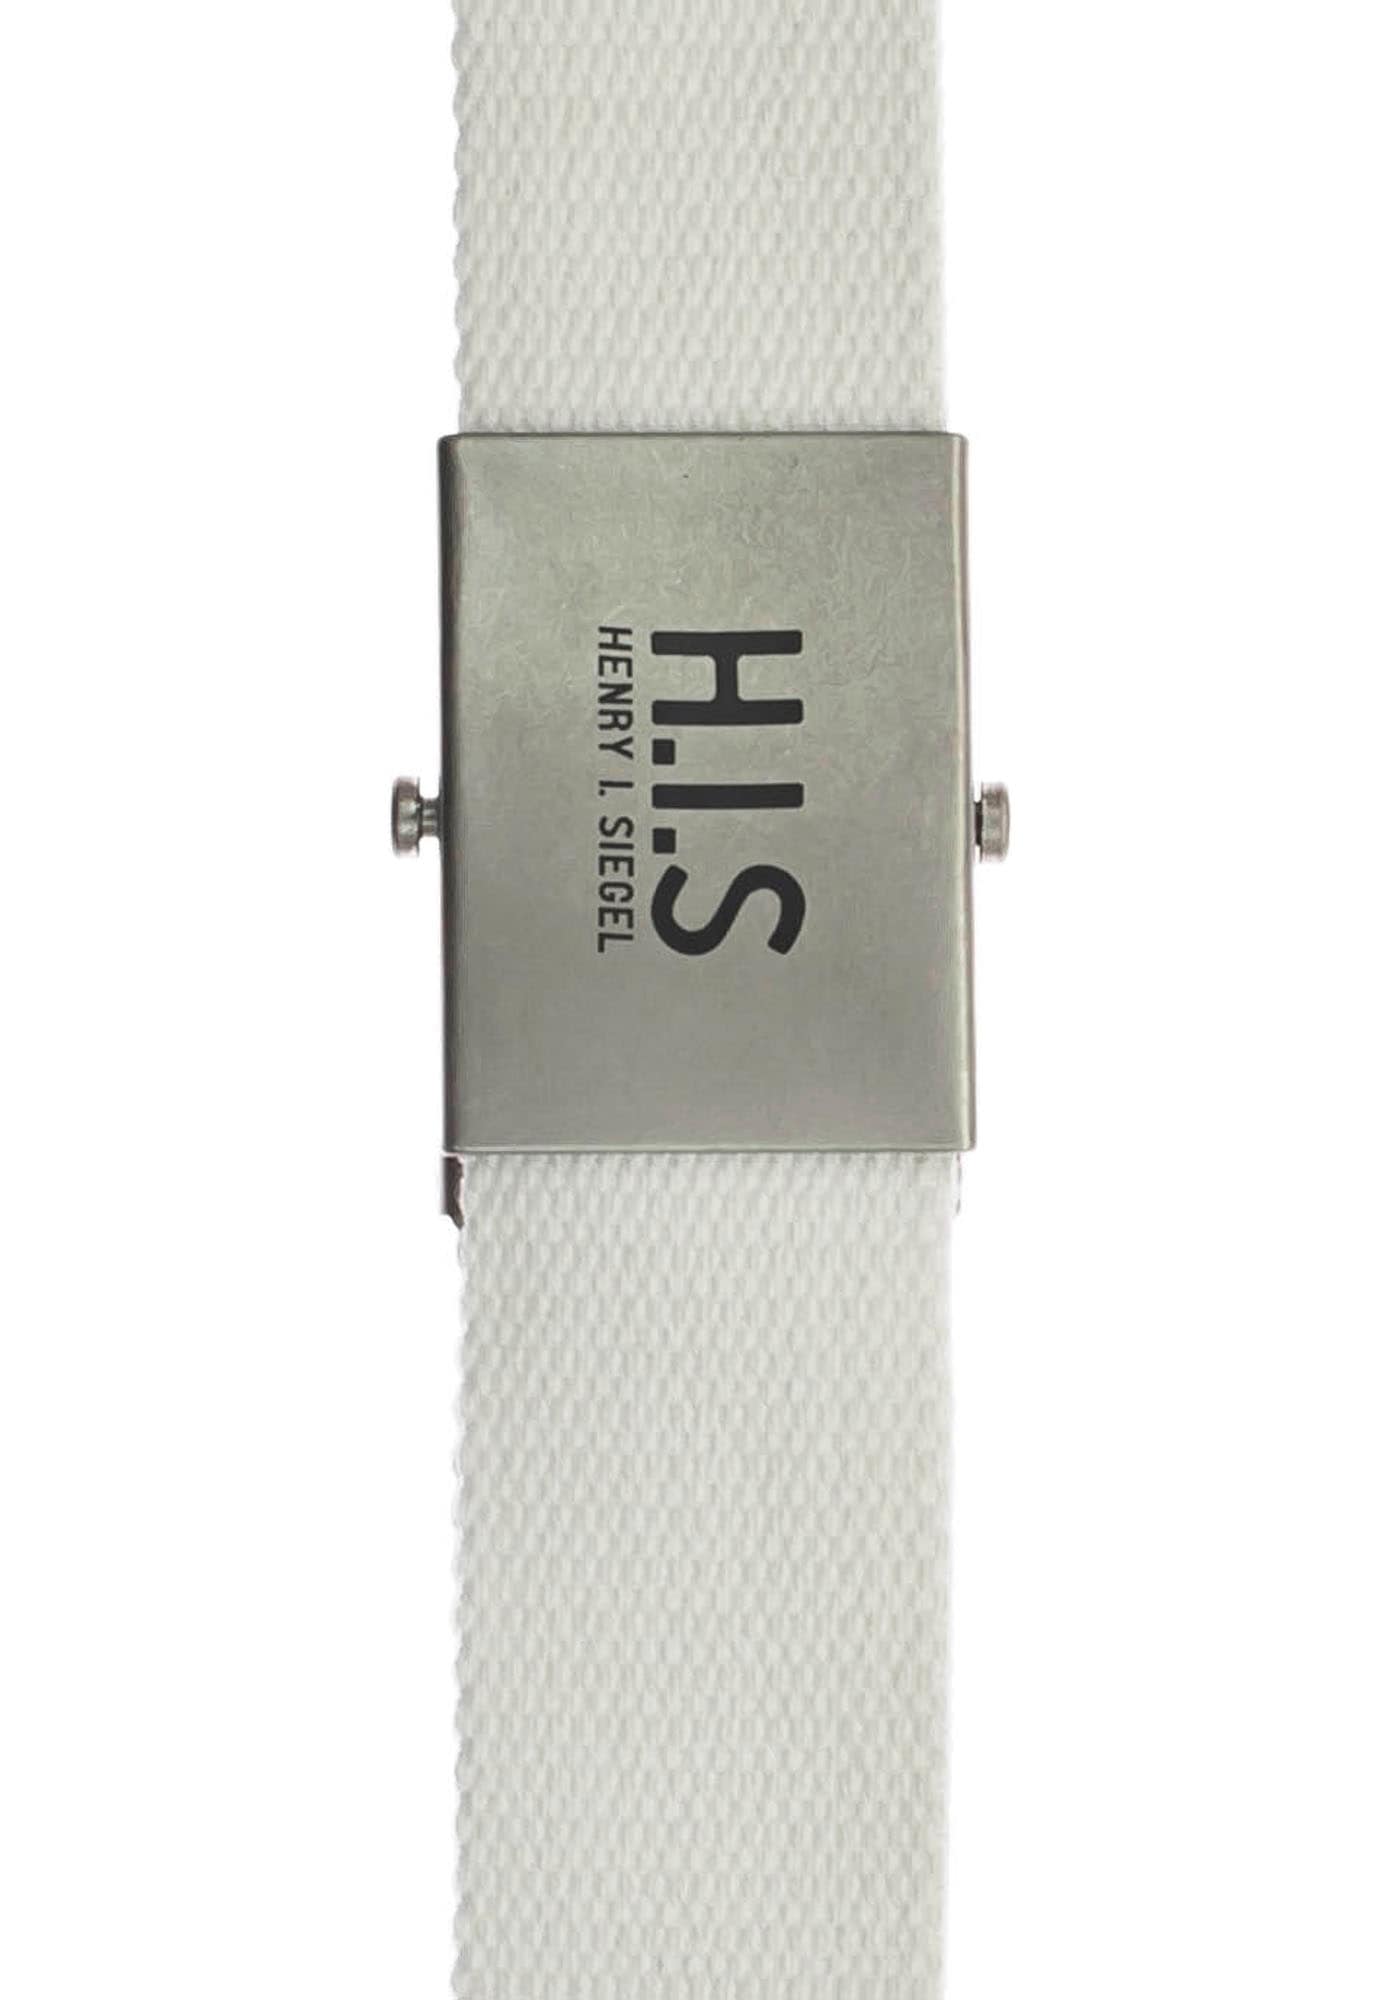 H.I.S Stoffgürtel, Bandgürtel mit H.I.S Logo auf der Koppelschließe im  Onlineshop | I\'m walking